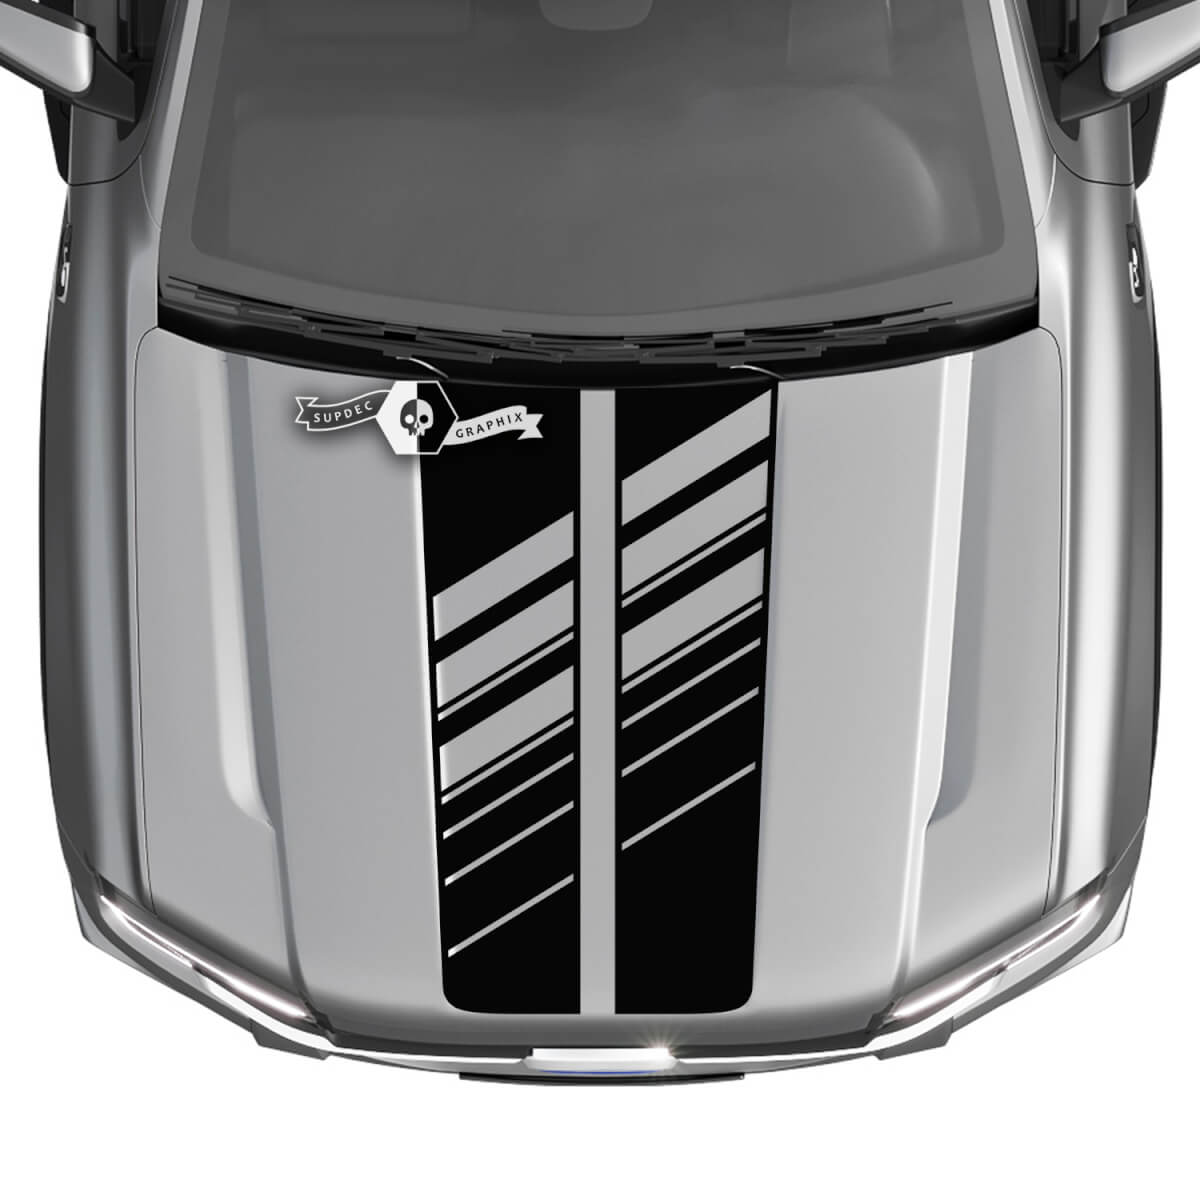 Ford Ranger Heckhaube, LKW-Streifen, Logo, Schlammreifenspuren, zerstörte Grafikaufkleber
